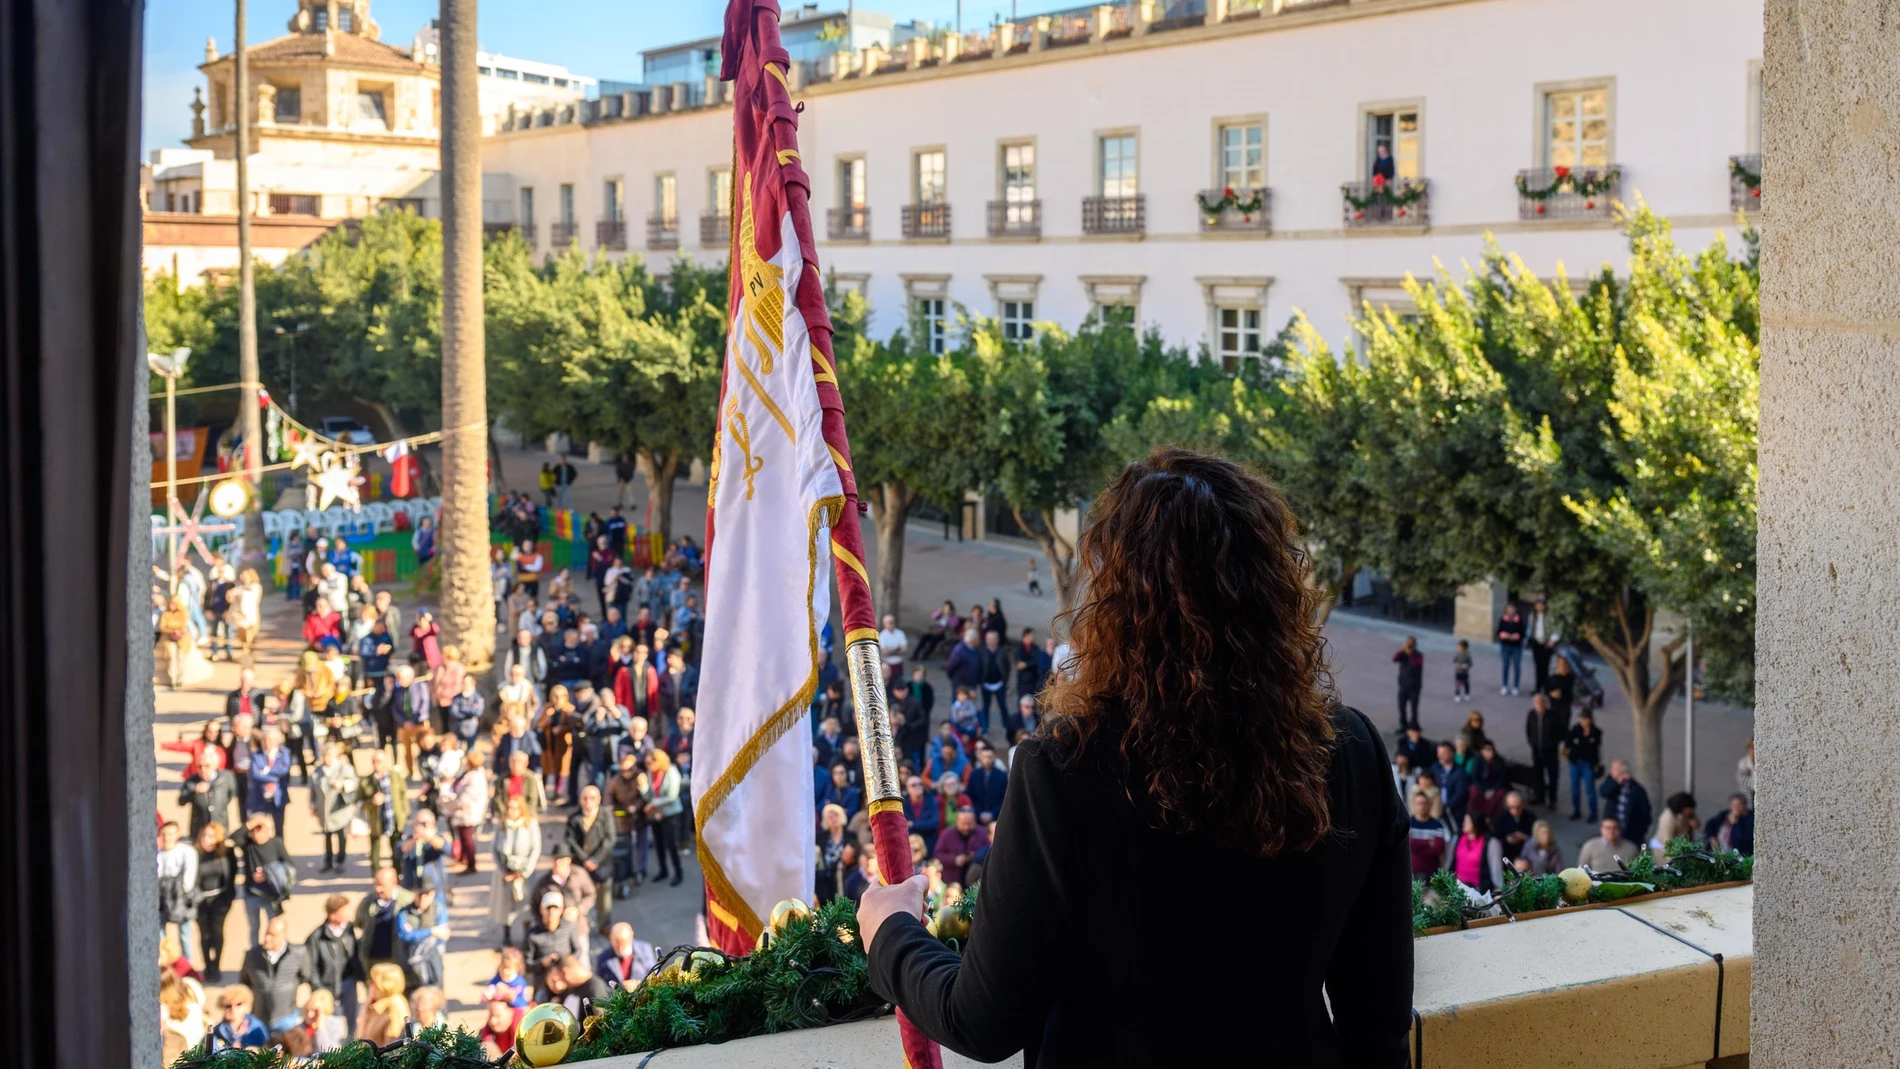 La alcaldesa de Almería preside en la Plaza Vieja los actos tradicionales de homenaje al Pendón